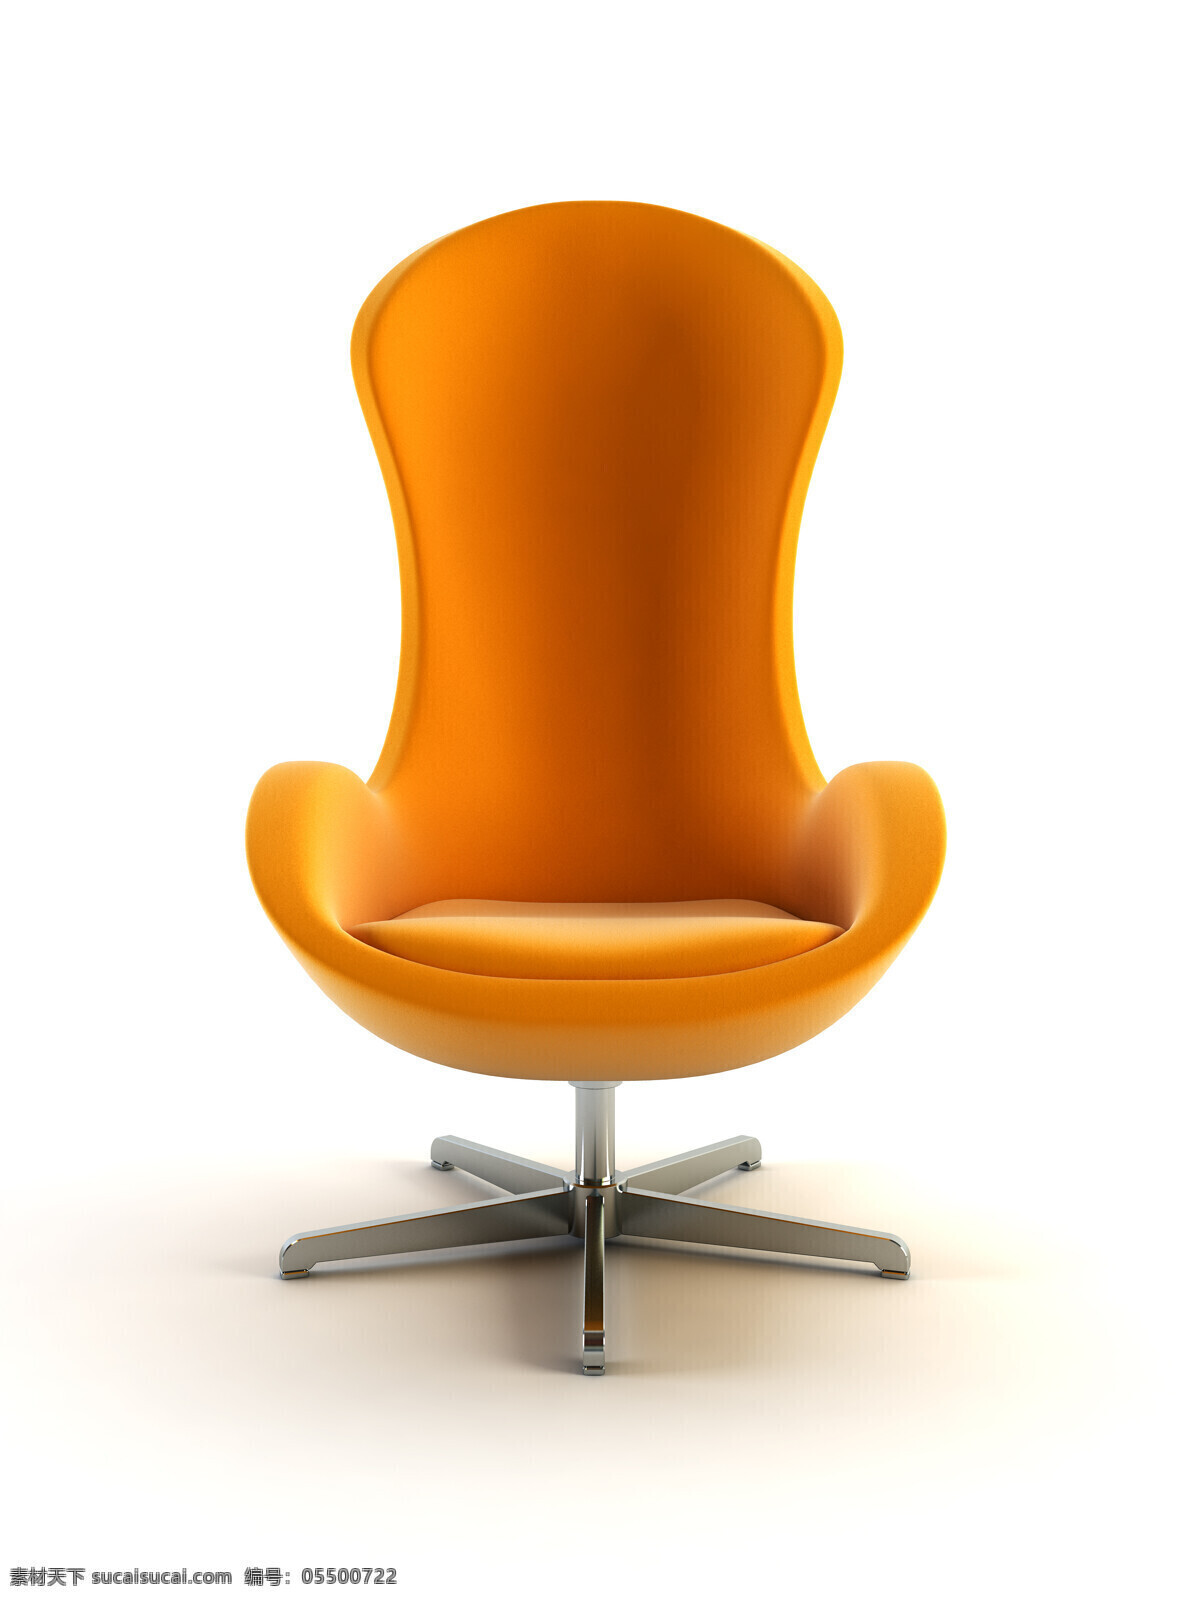 椅子 素材图片 椅子摄影 椅子素材 椅子图片 办公椅 室内设计 环境家居